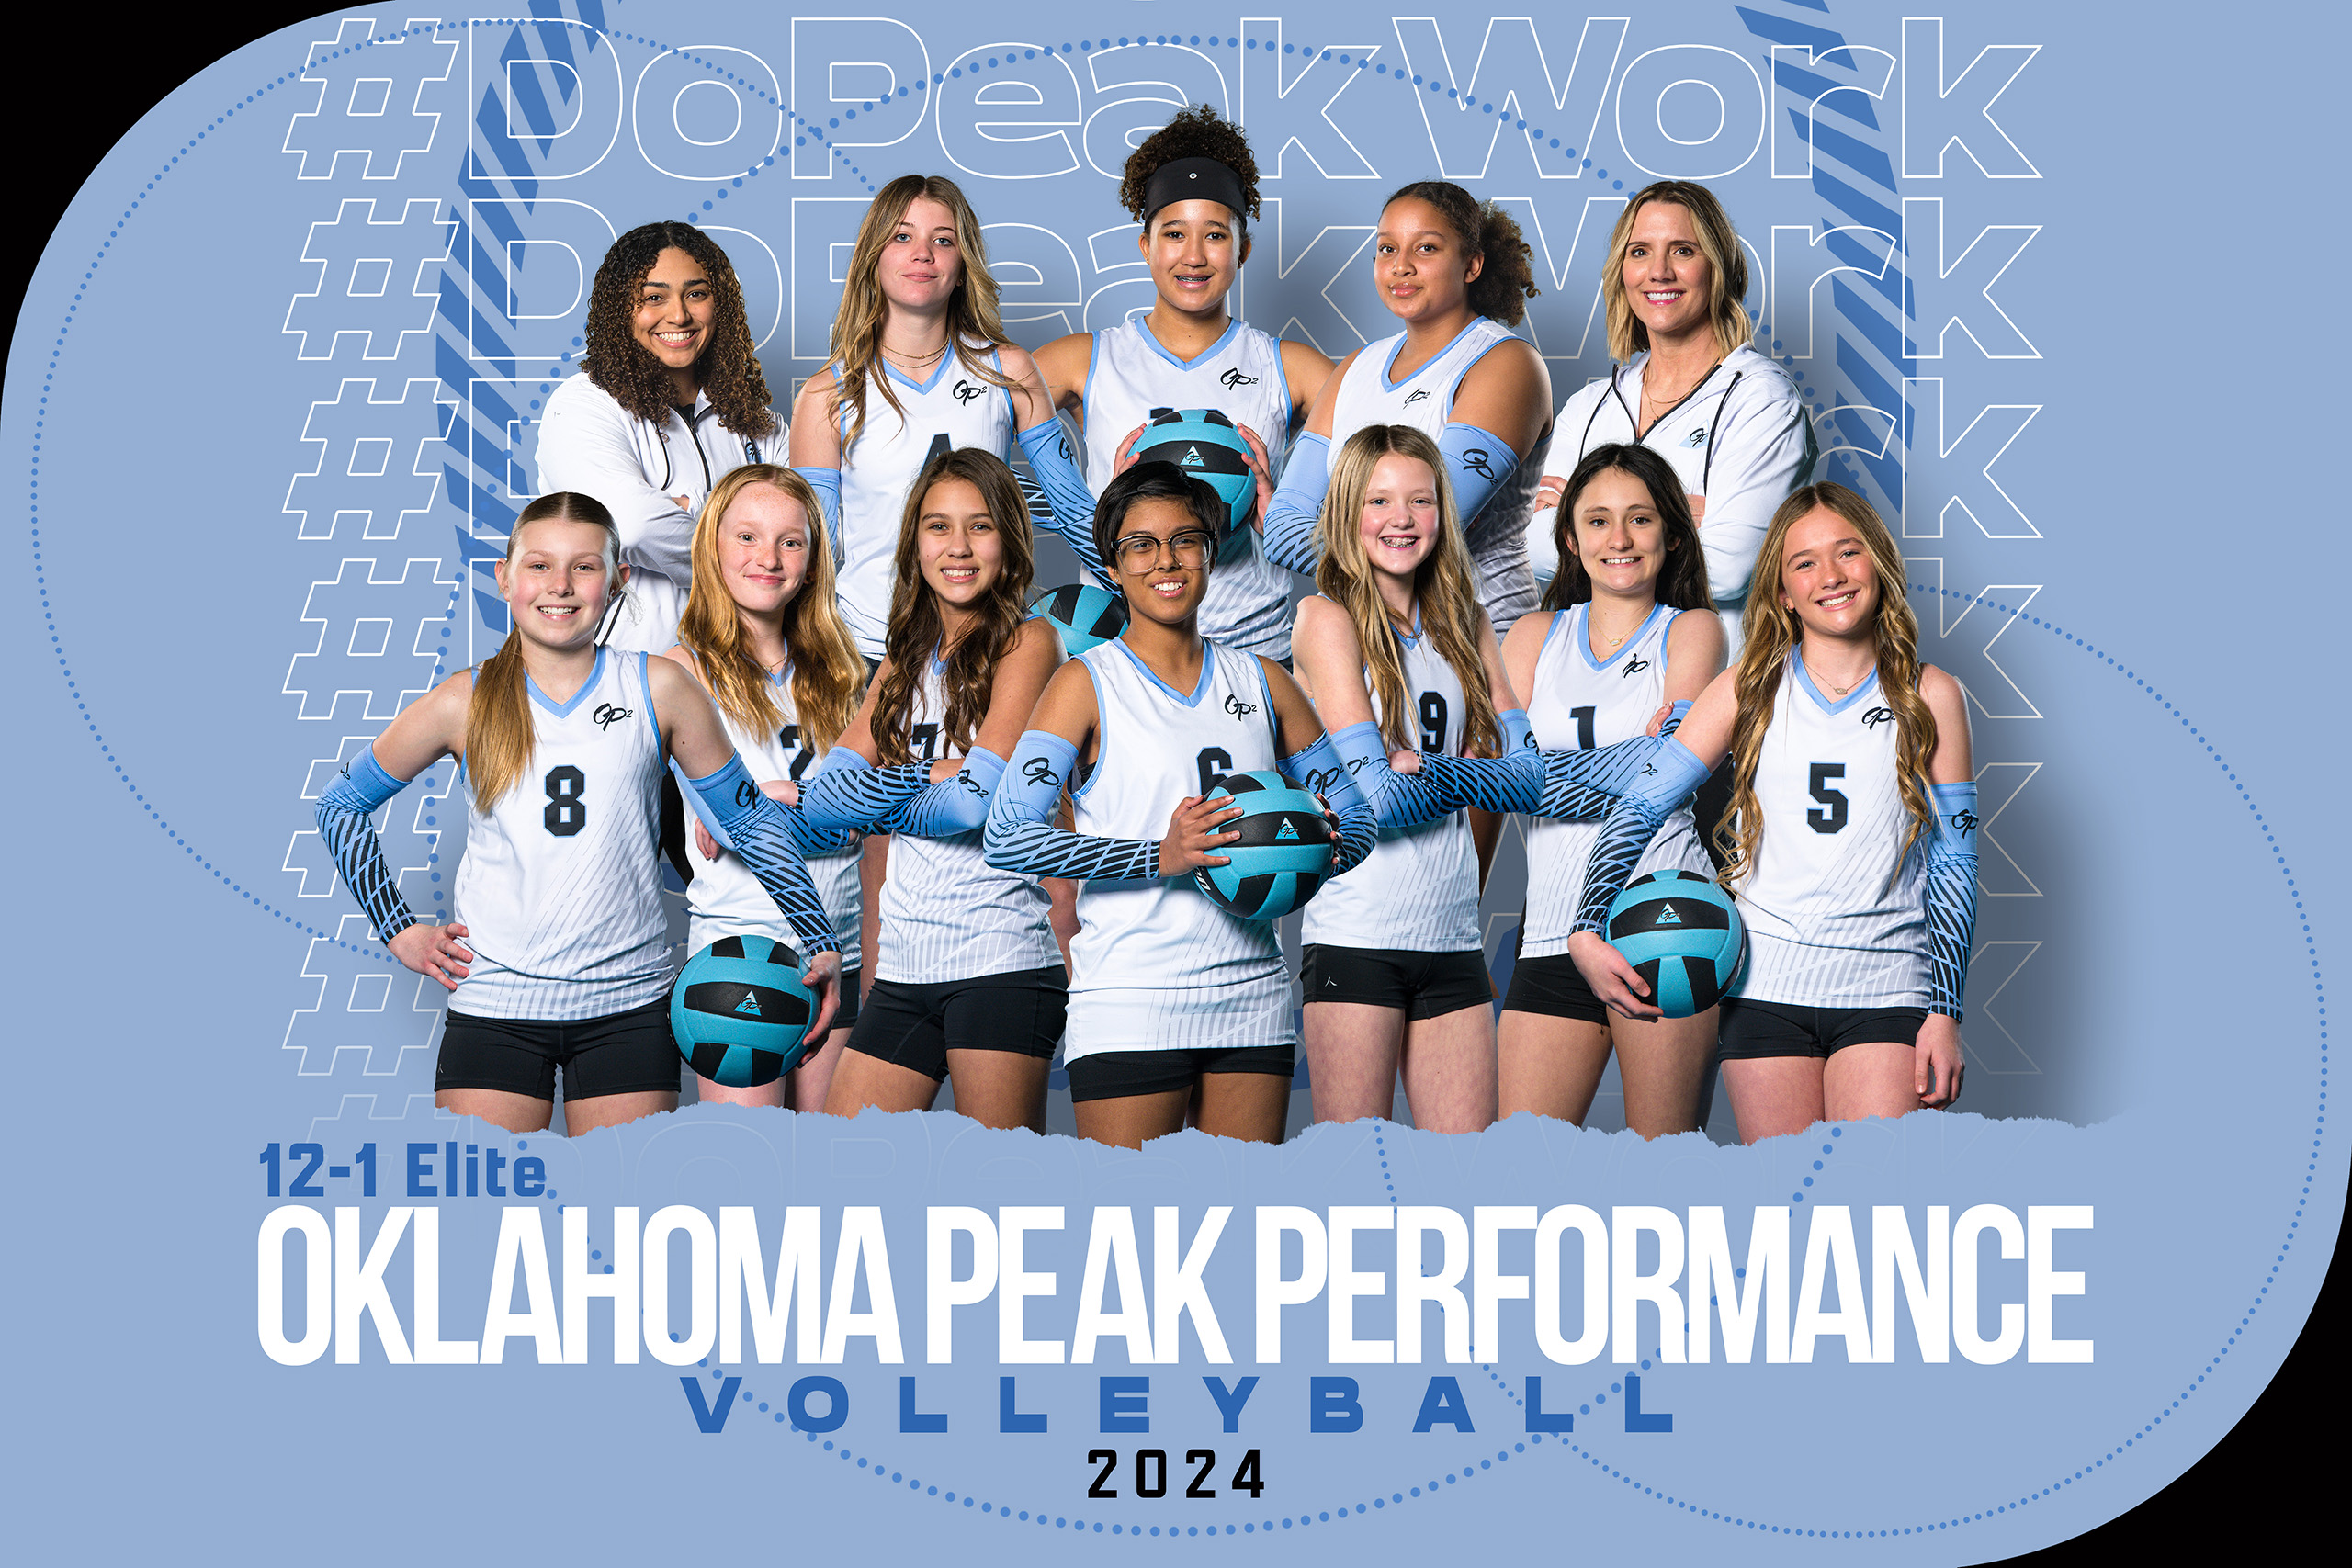 2024 Oklahoma Peak Performance 12-1